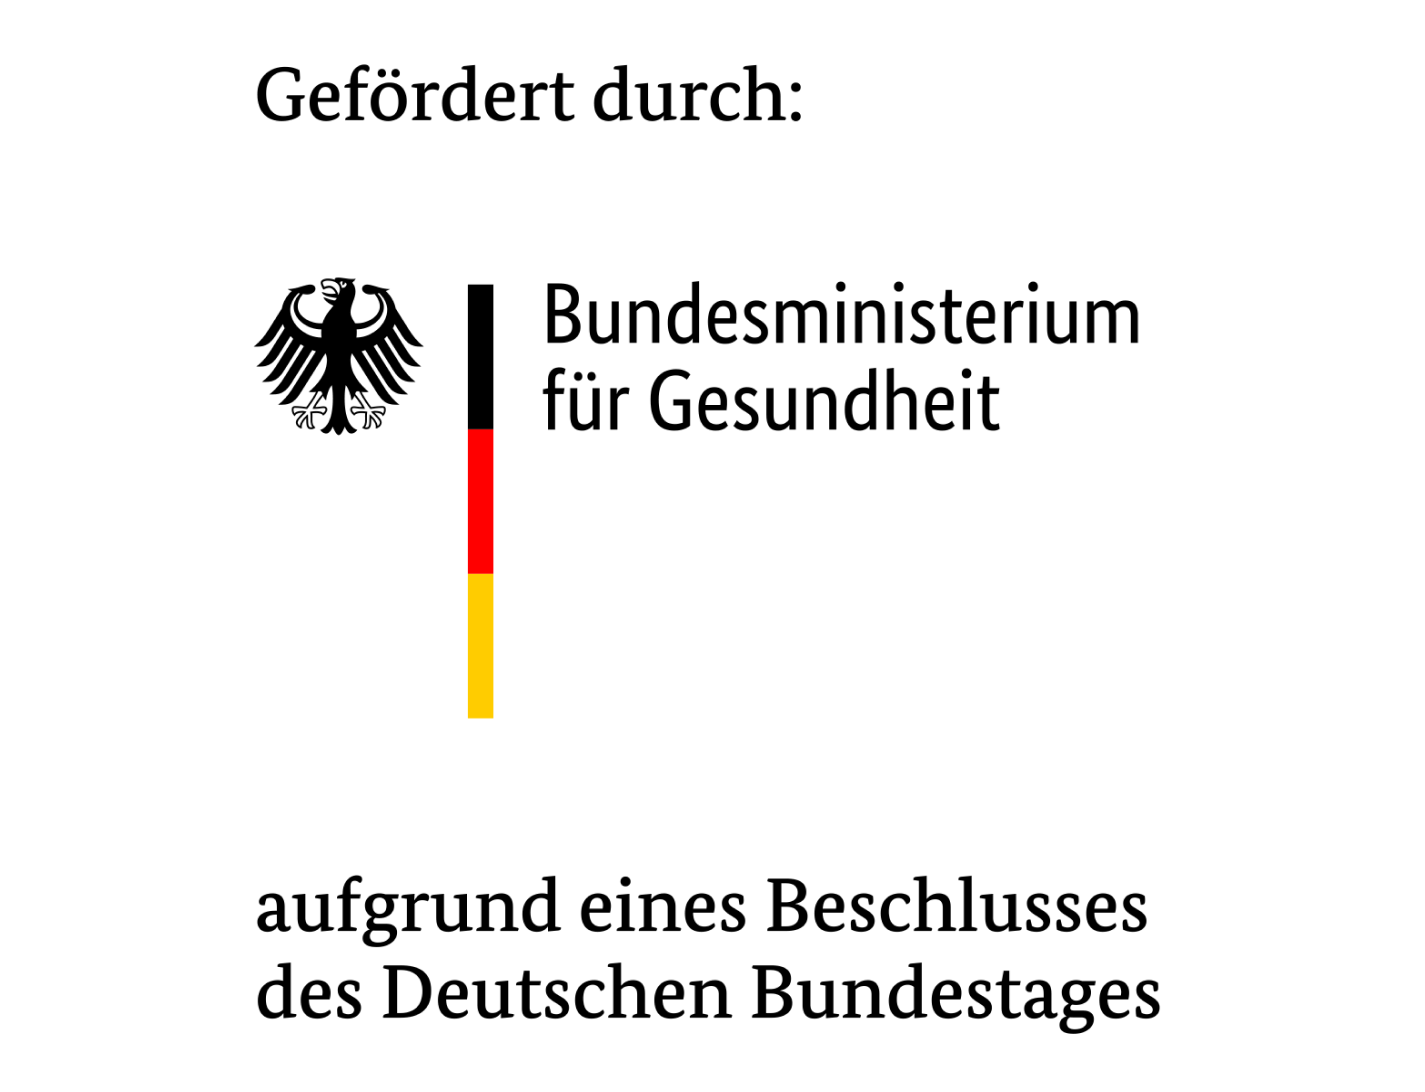 Logo: Gefördert durch: Bundesministerium für Gesundheit aufgrund eines Beschlusses des Deutschen Bundestages.